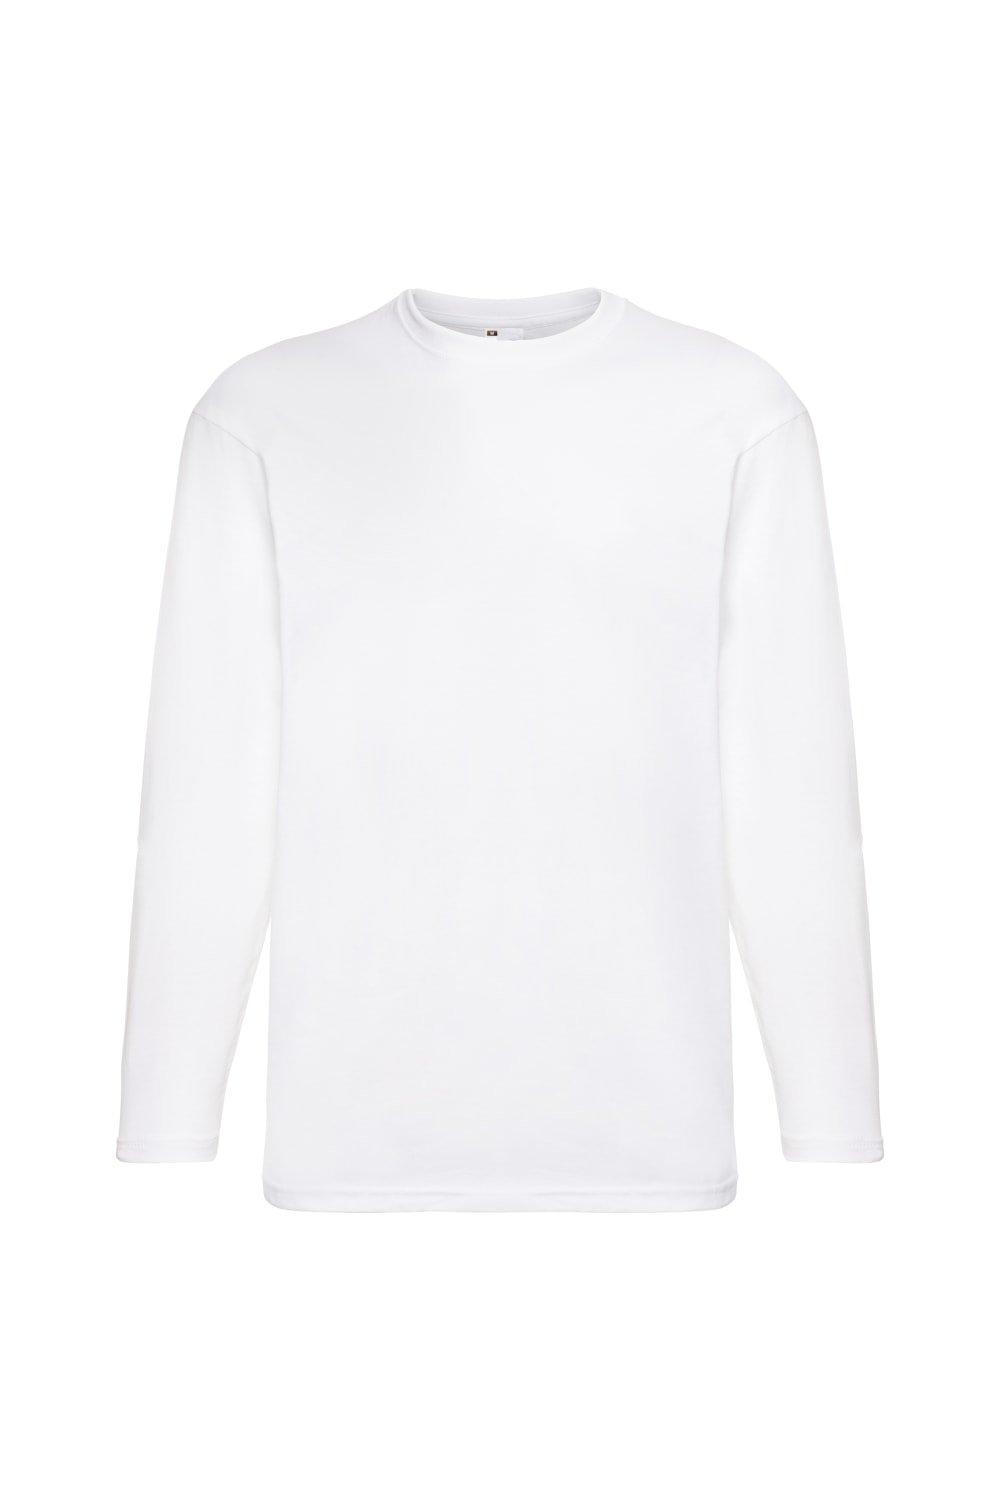 Повседневная футболка Value с длинным рукавом Universal Textiles, белый мужская футболка милый пришелец 2xl серый меланж